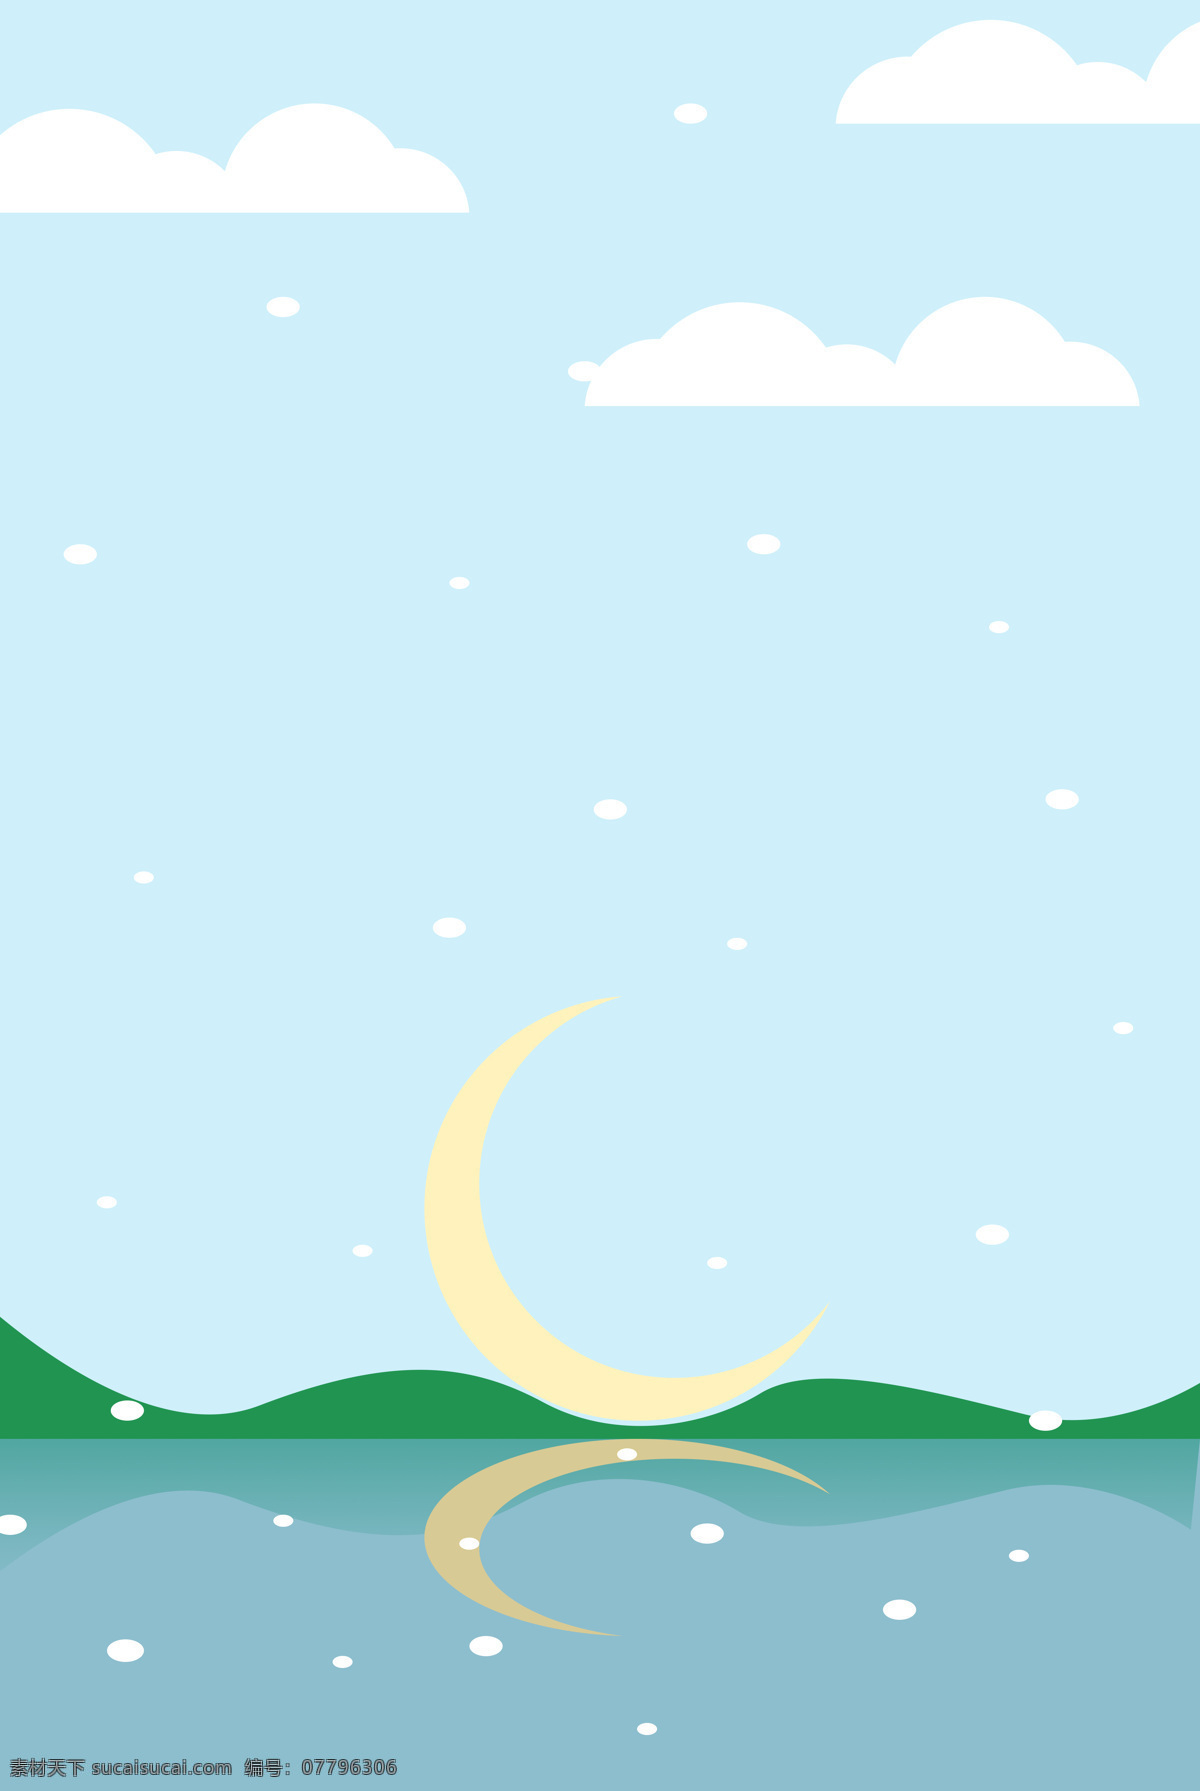 夜空 卡通动画 背景 卡通 动画 月亮 星空 白云 标志图标 其他图标